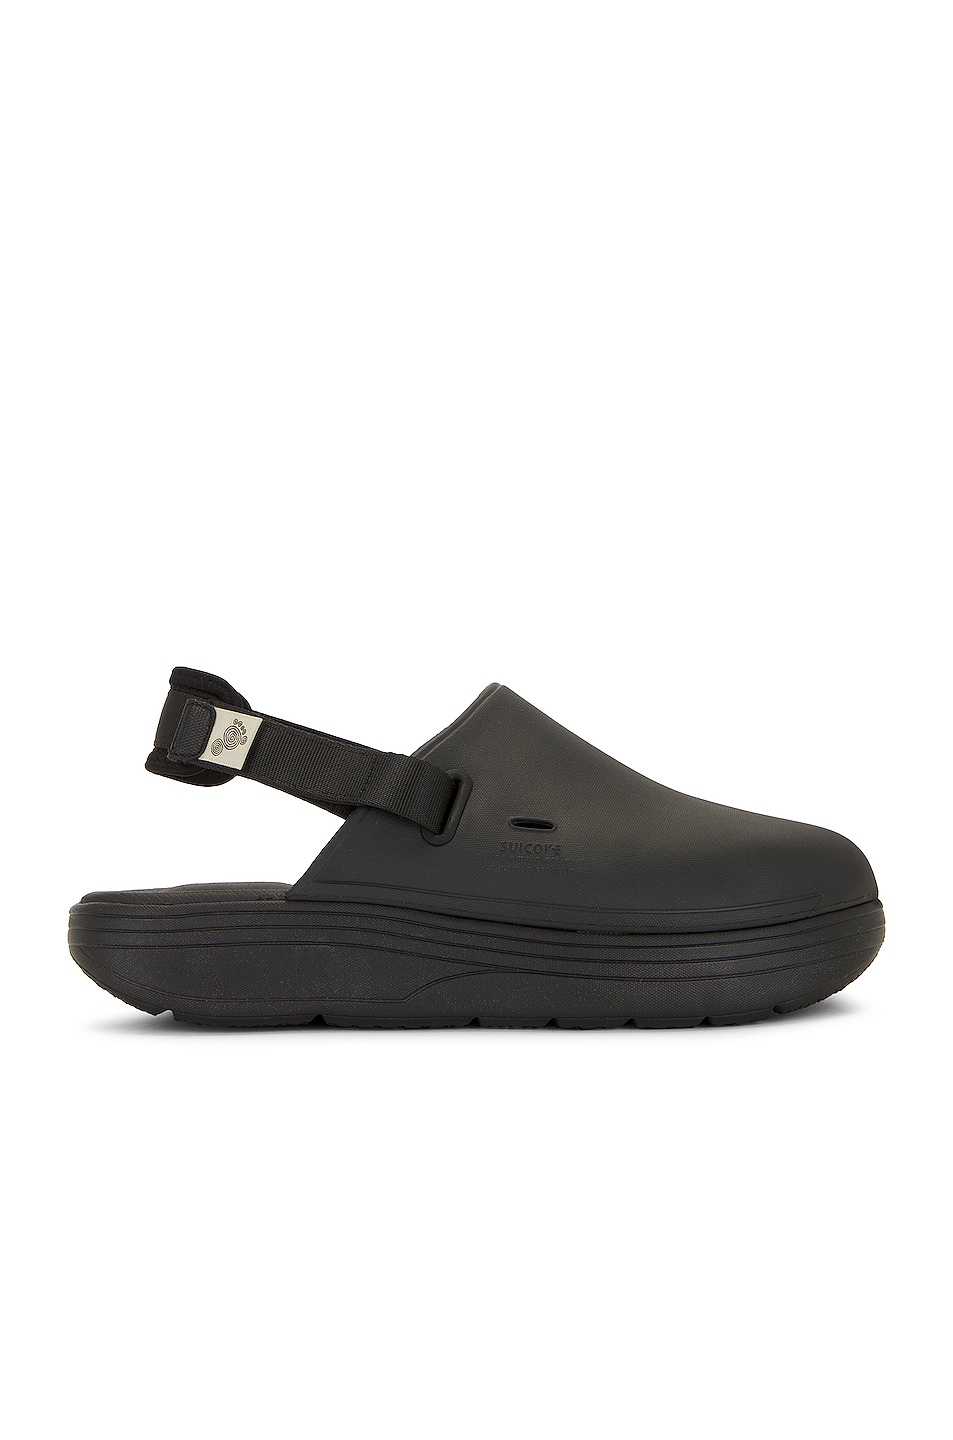 Image 1 of Suicoke Cappo Sandal in Black